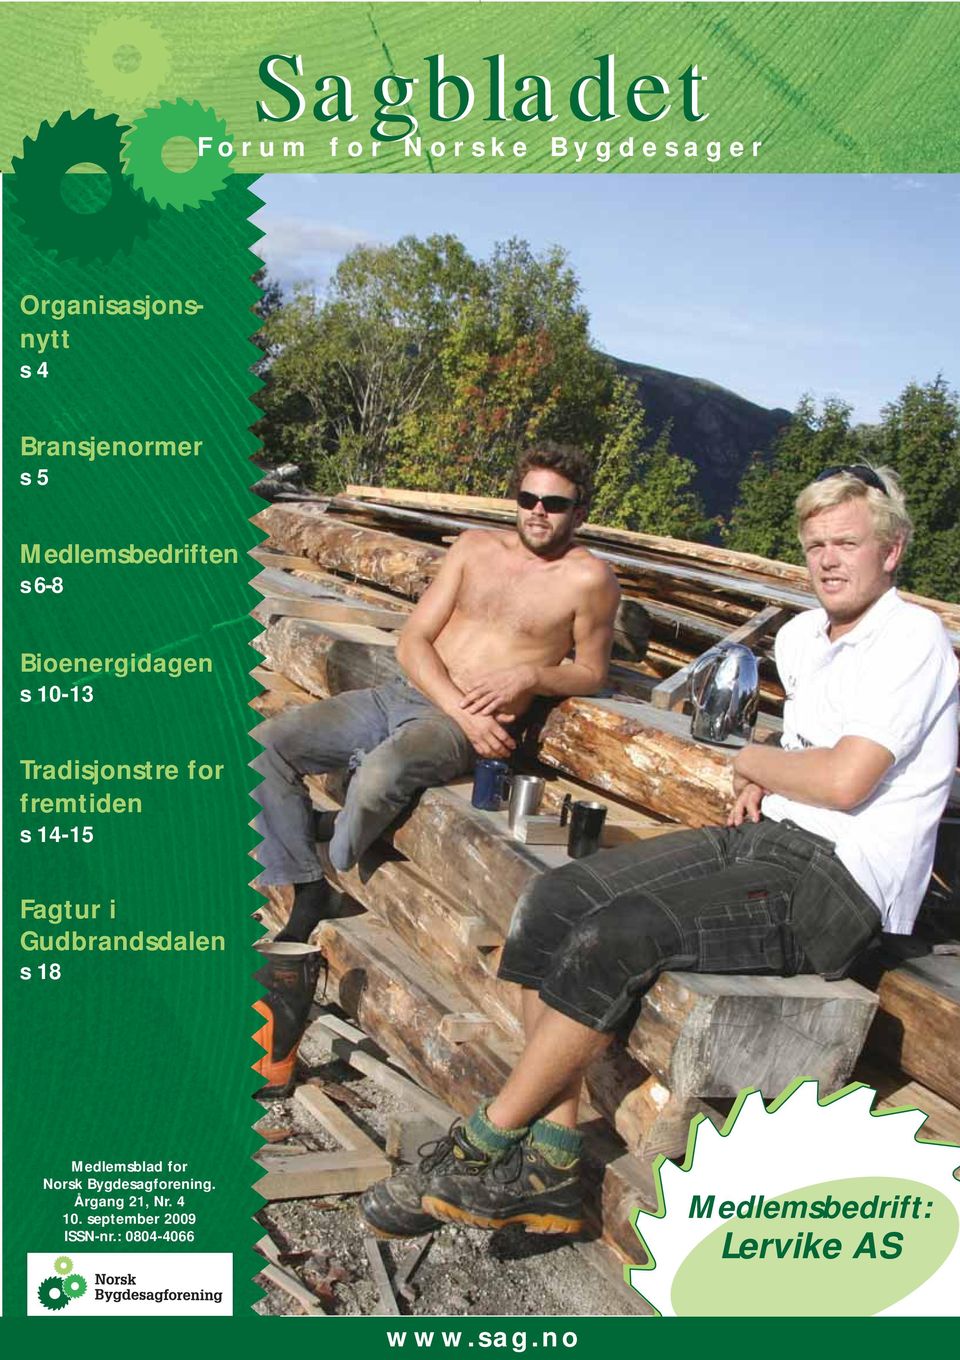 14-15 Fagtur i Gudbrandsdalen s 18 Medlemsblad for Norsk Bygdesagforening.